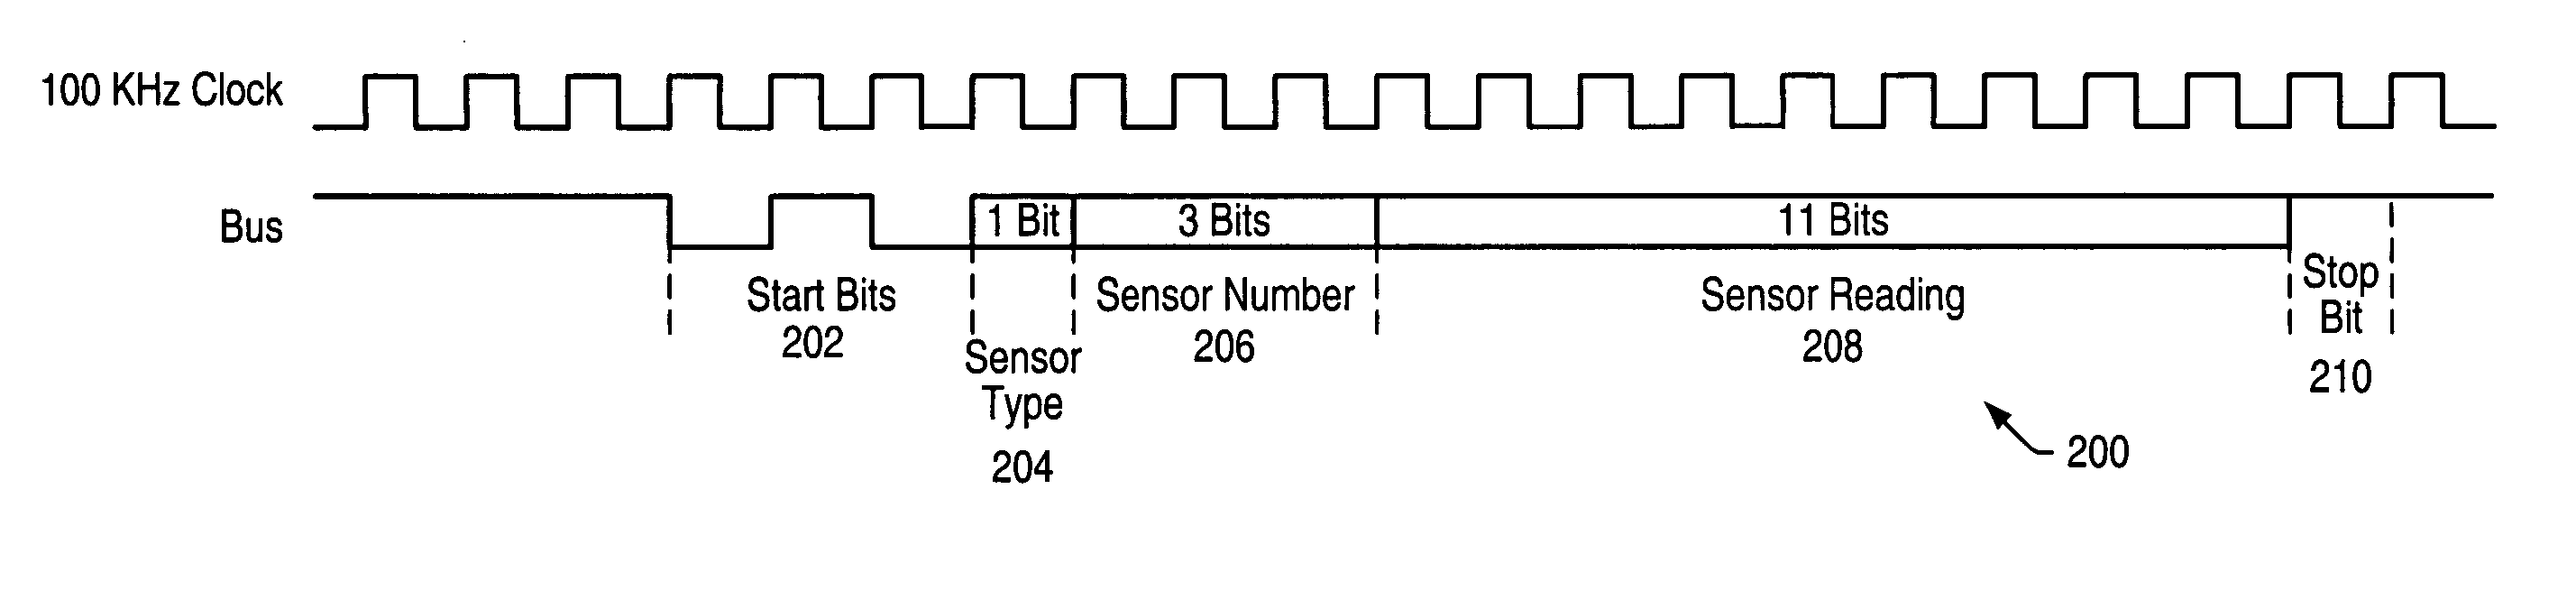 Budget sensor bus